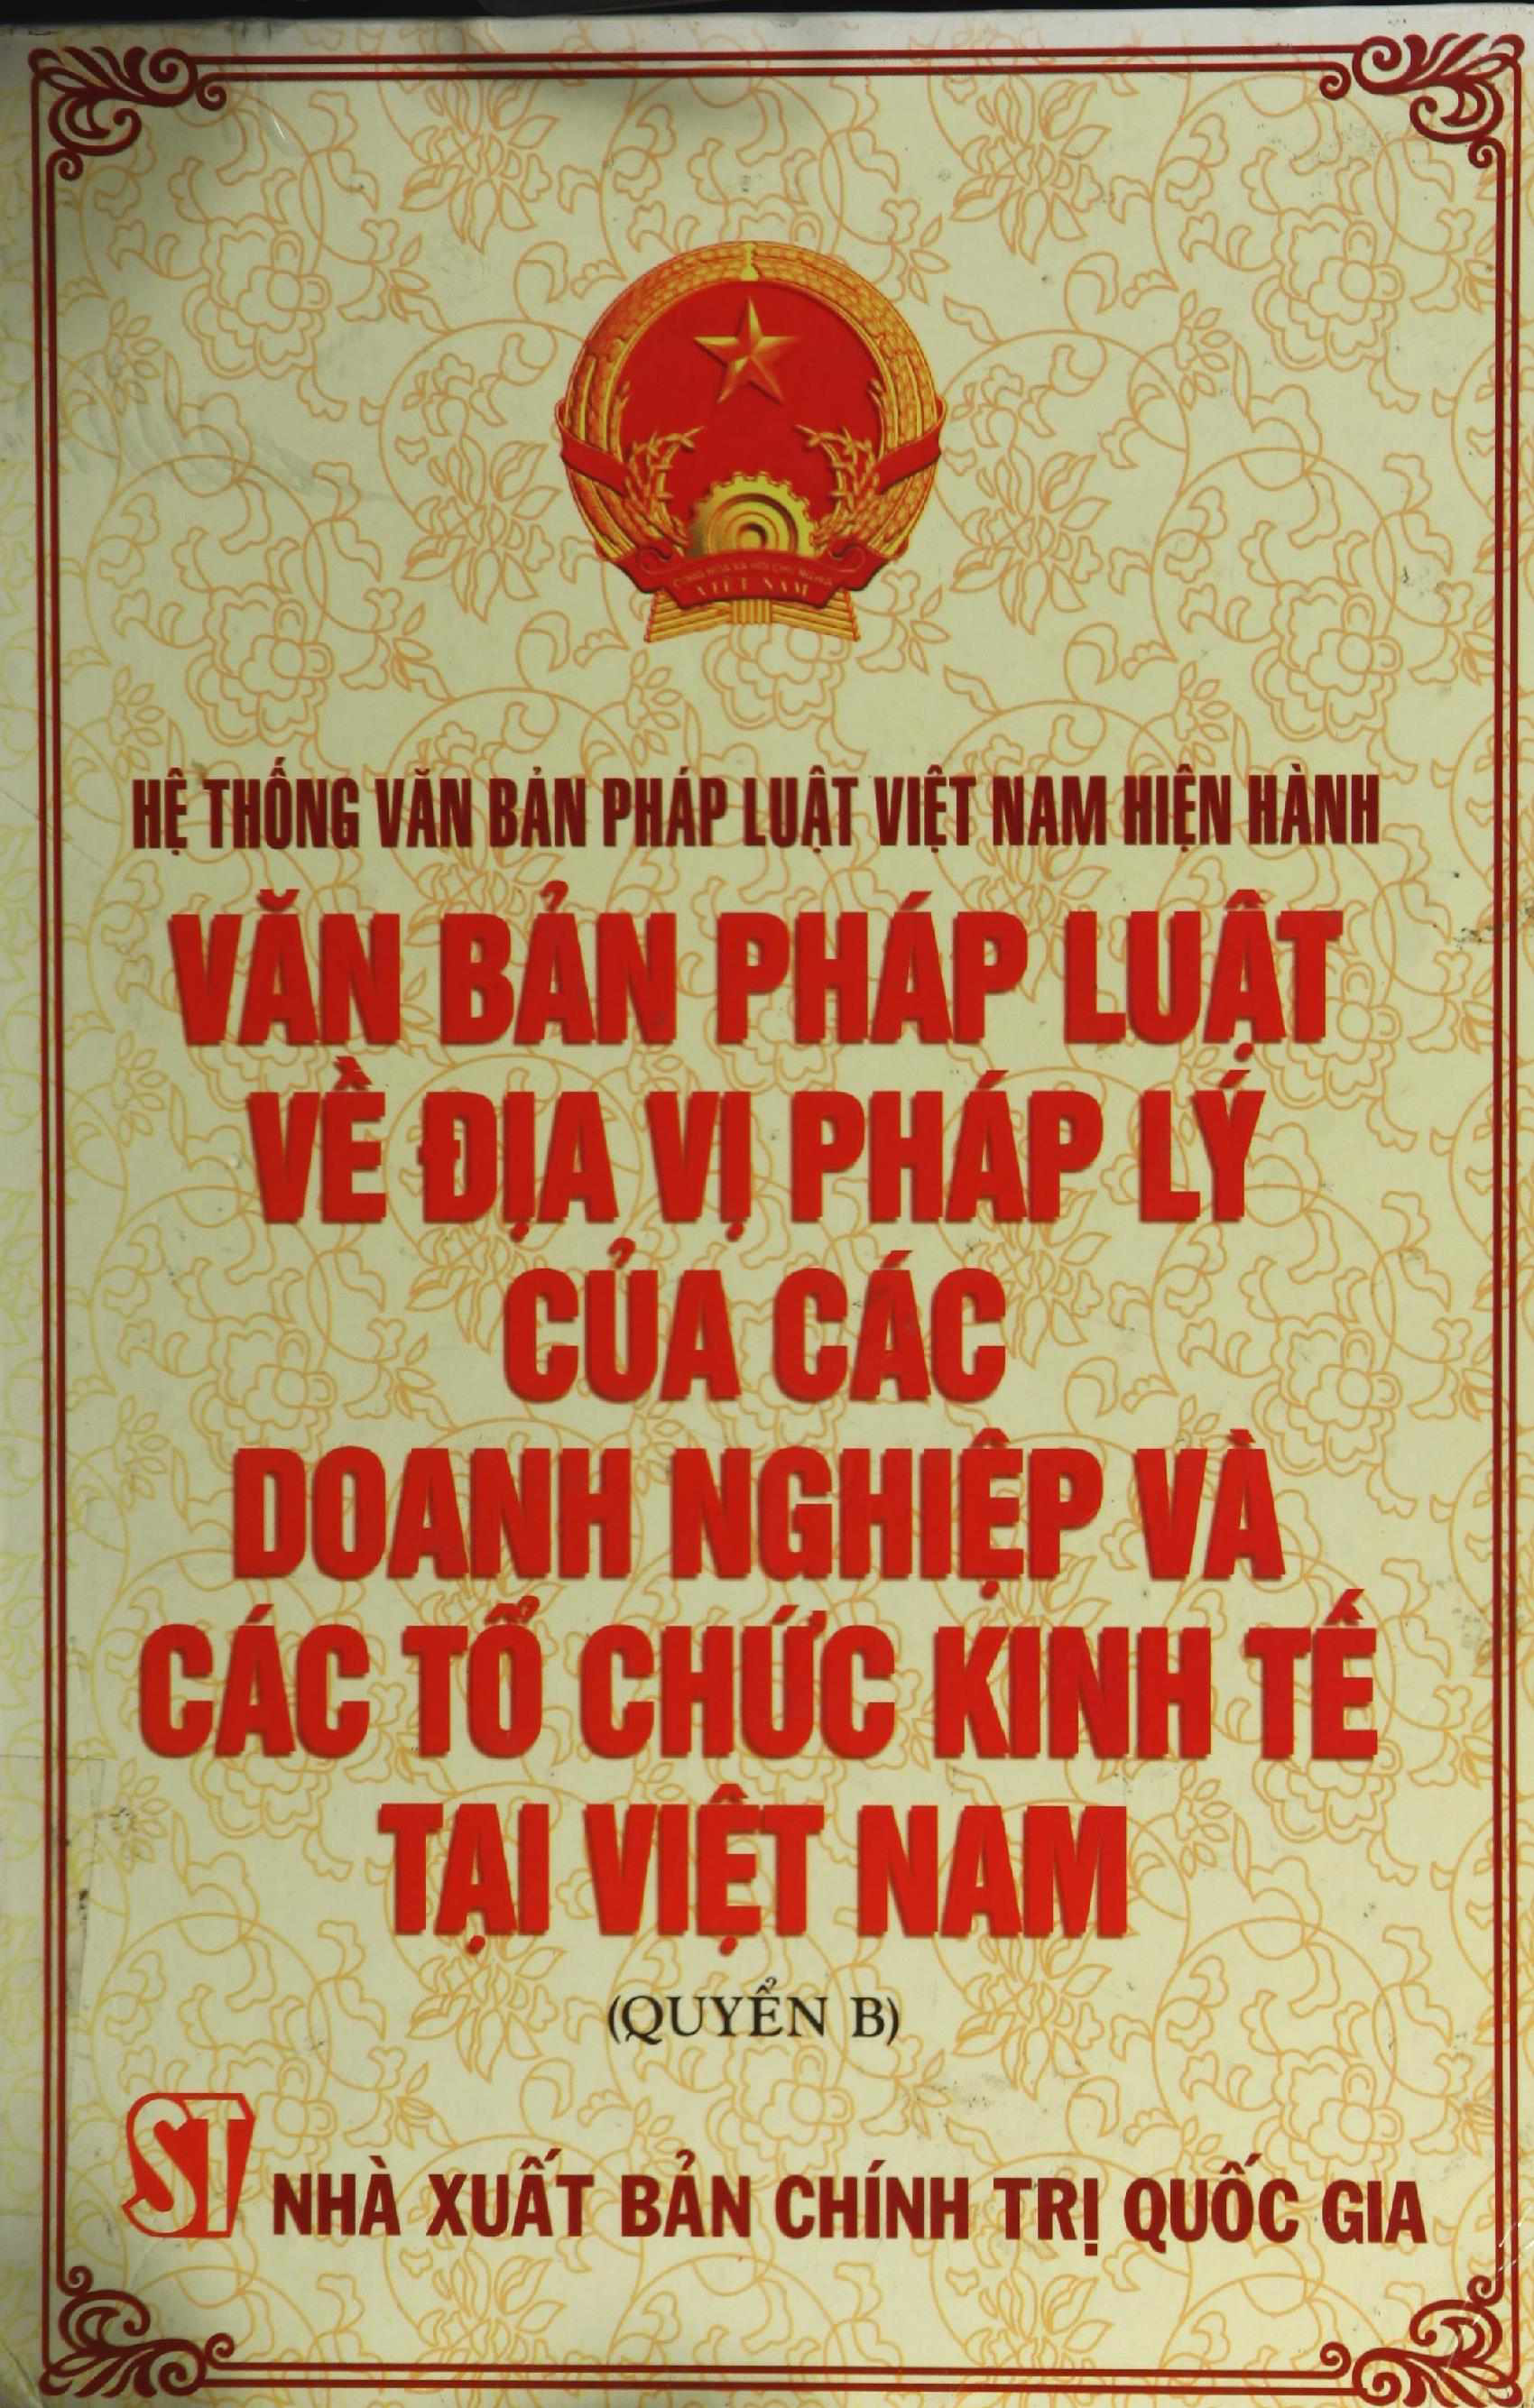 Văn bản pháp luật về địa vị pháp lý các doanh nghiệp và các tổ chức kinh tế tại Việt Nam. Quyển B